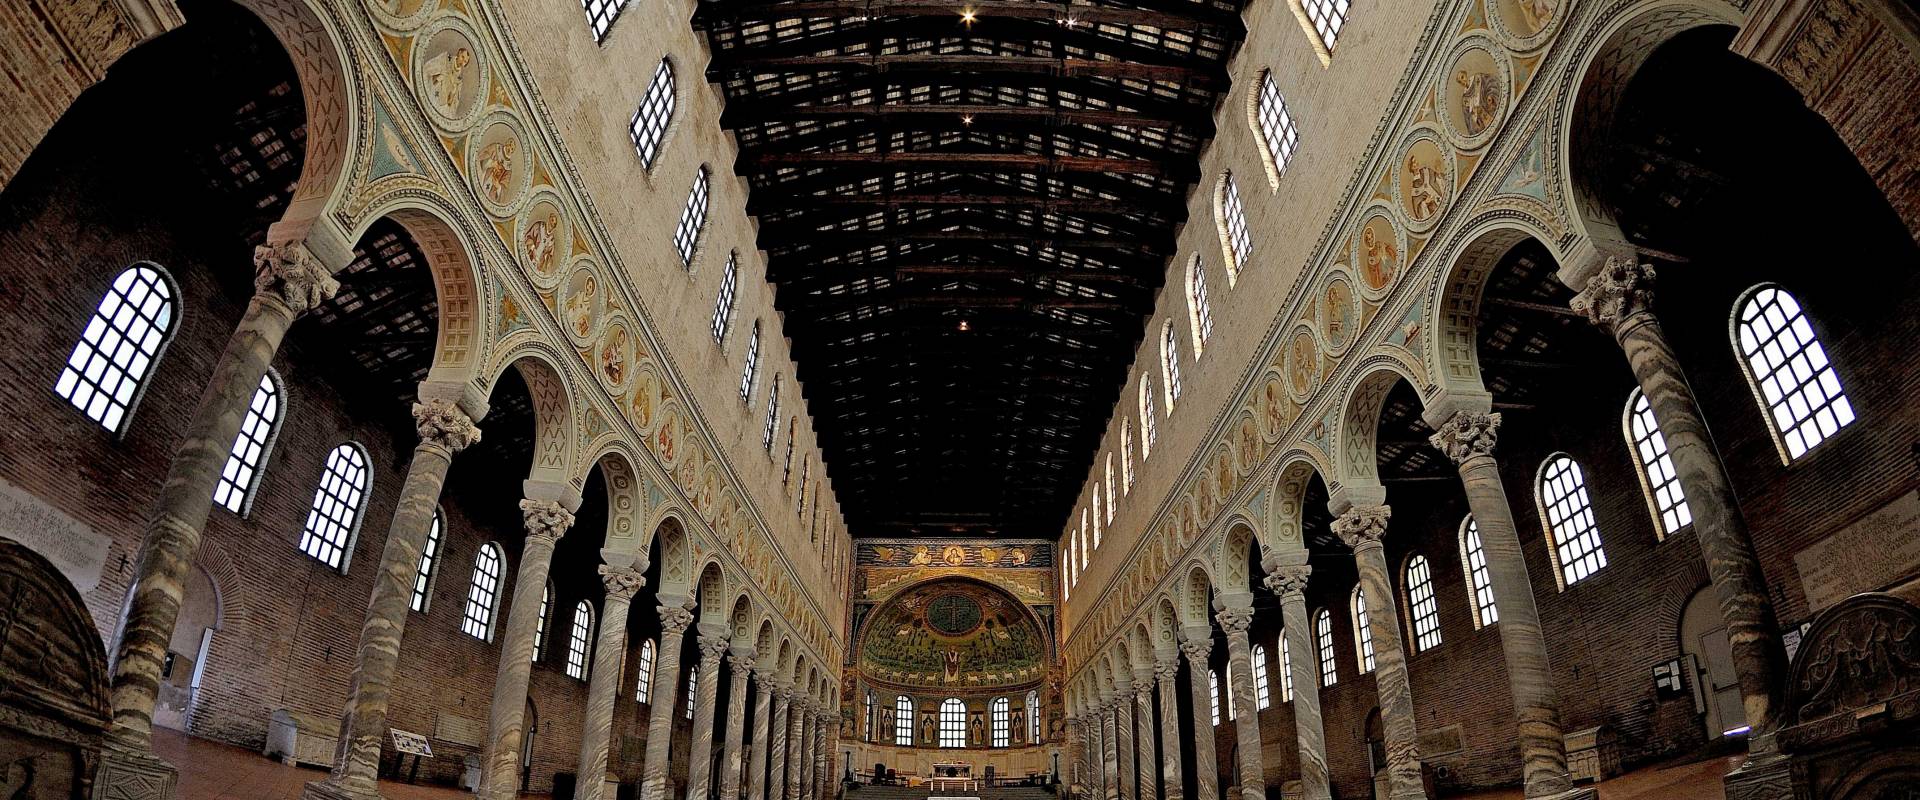 Santa Apollinare Ravenna - Italy DSC 4196 01M panoramica foto di Stefano Degli Esposti